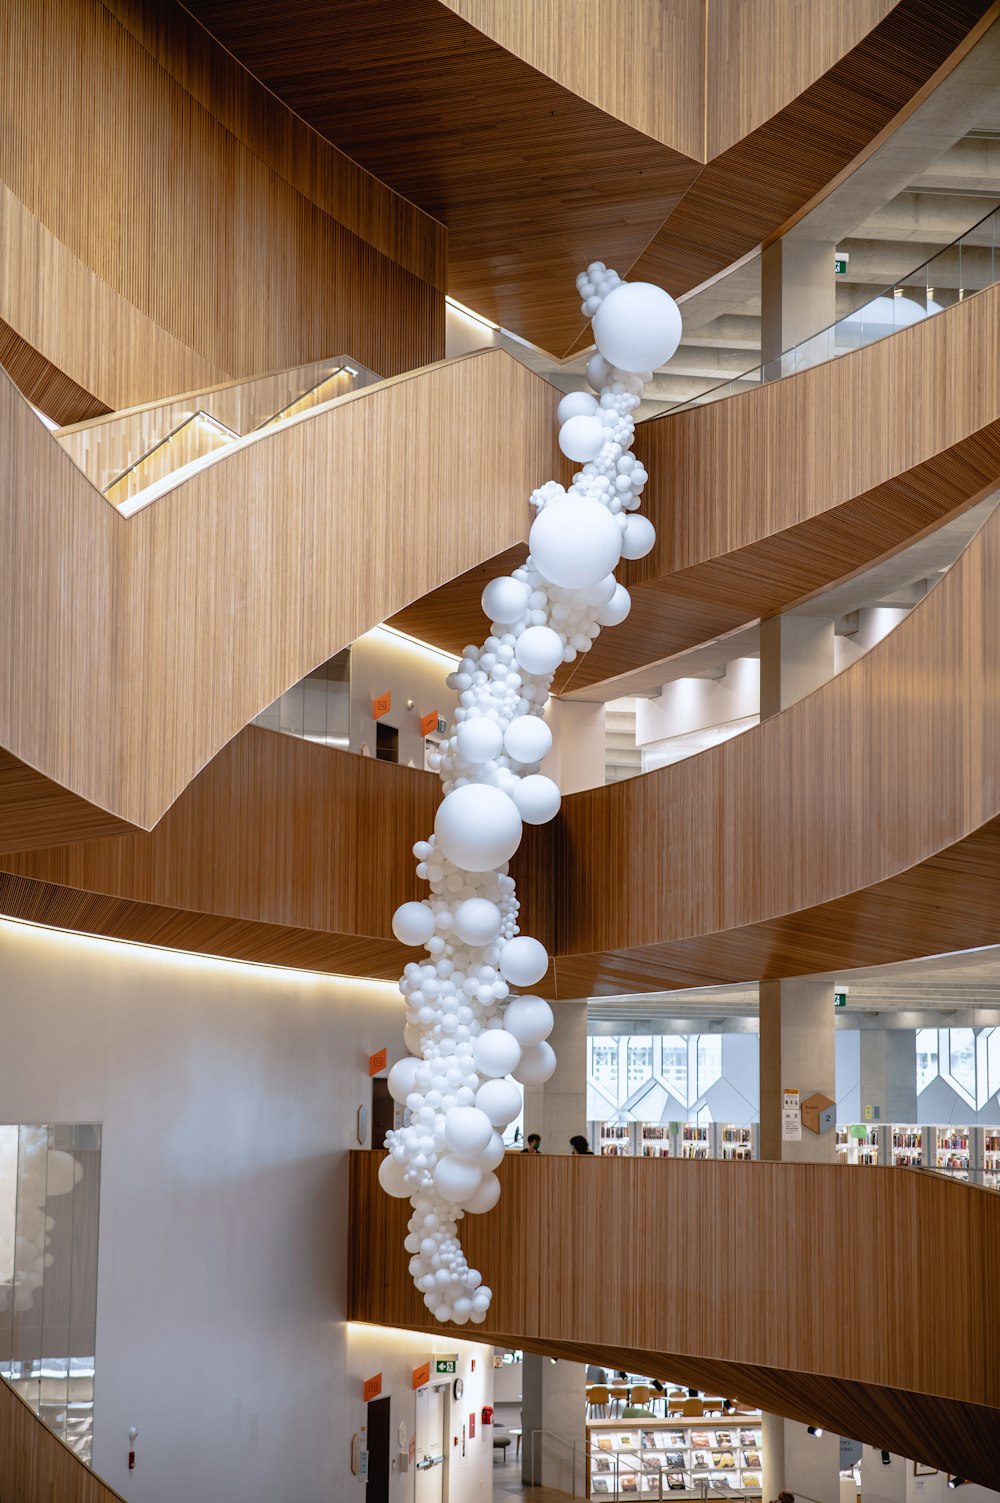 Un mazzo di palloncini appesi al soffitto di un edificio foto – Calgary  Immagine gratuita su Unsplash